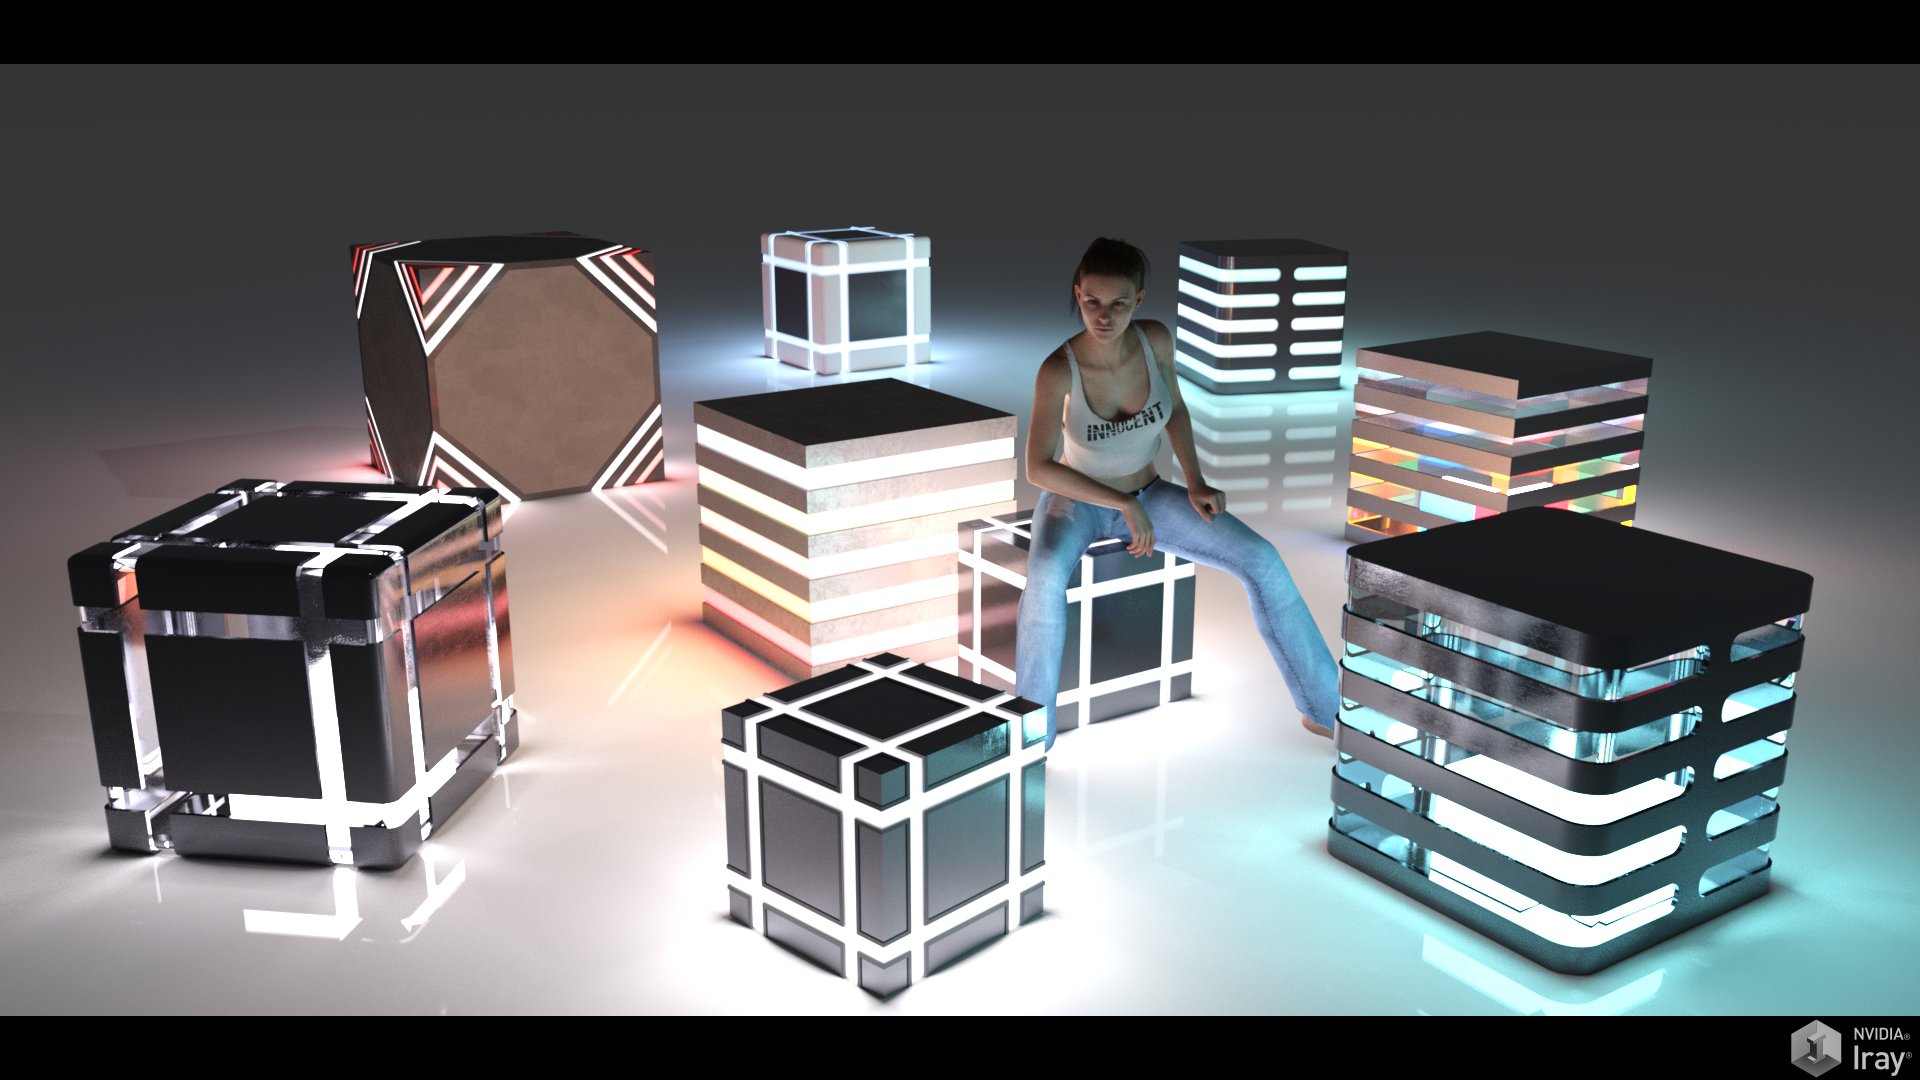 FM Glowing Things by: Flipmode, 3D Models by Daz 3D